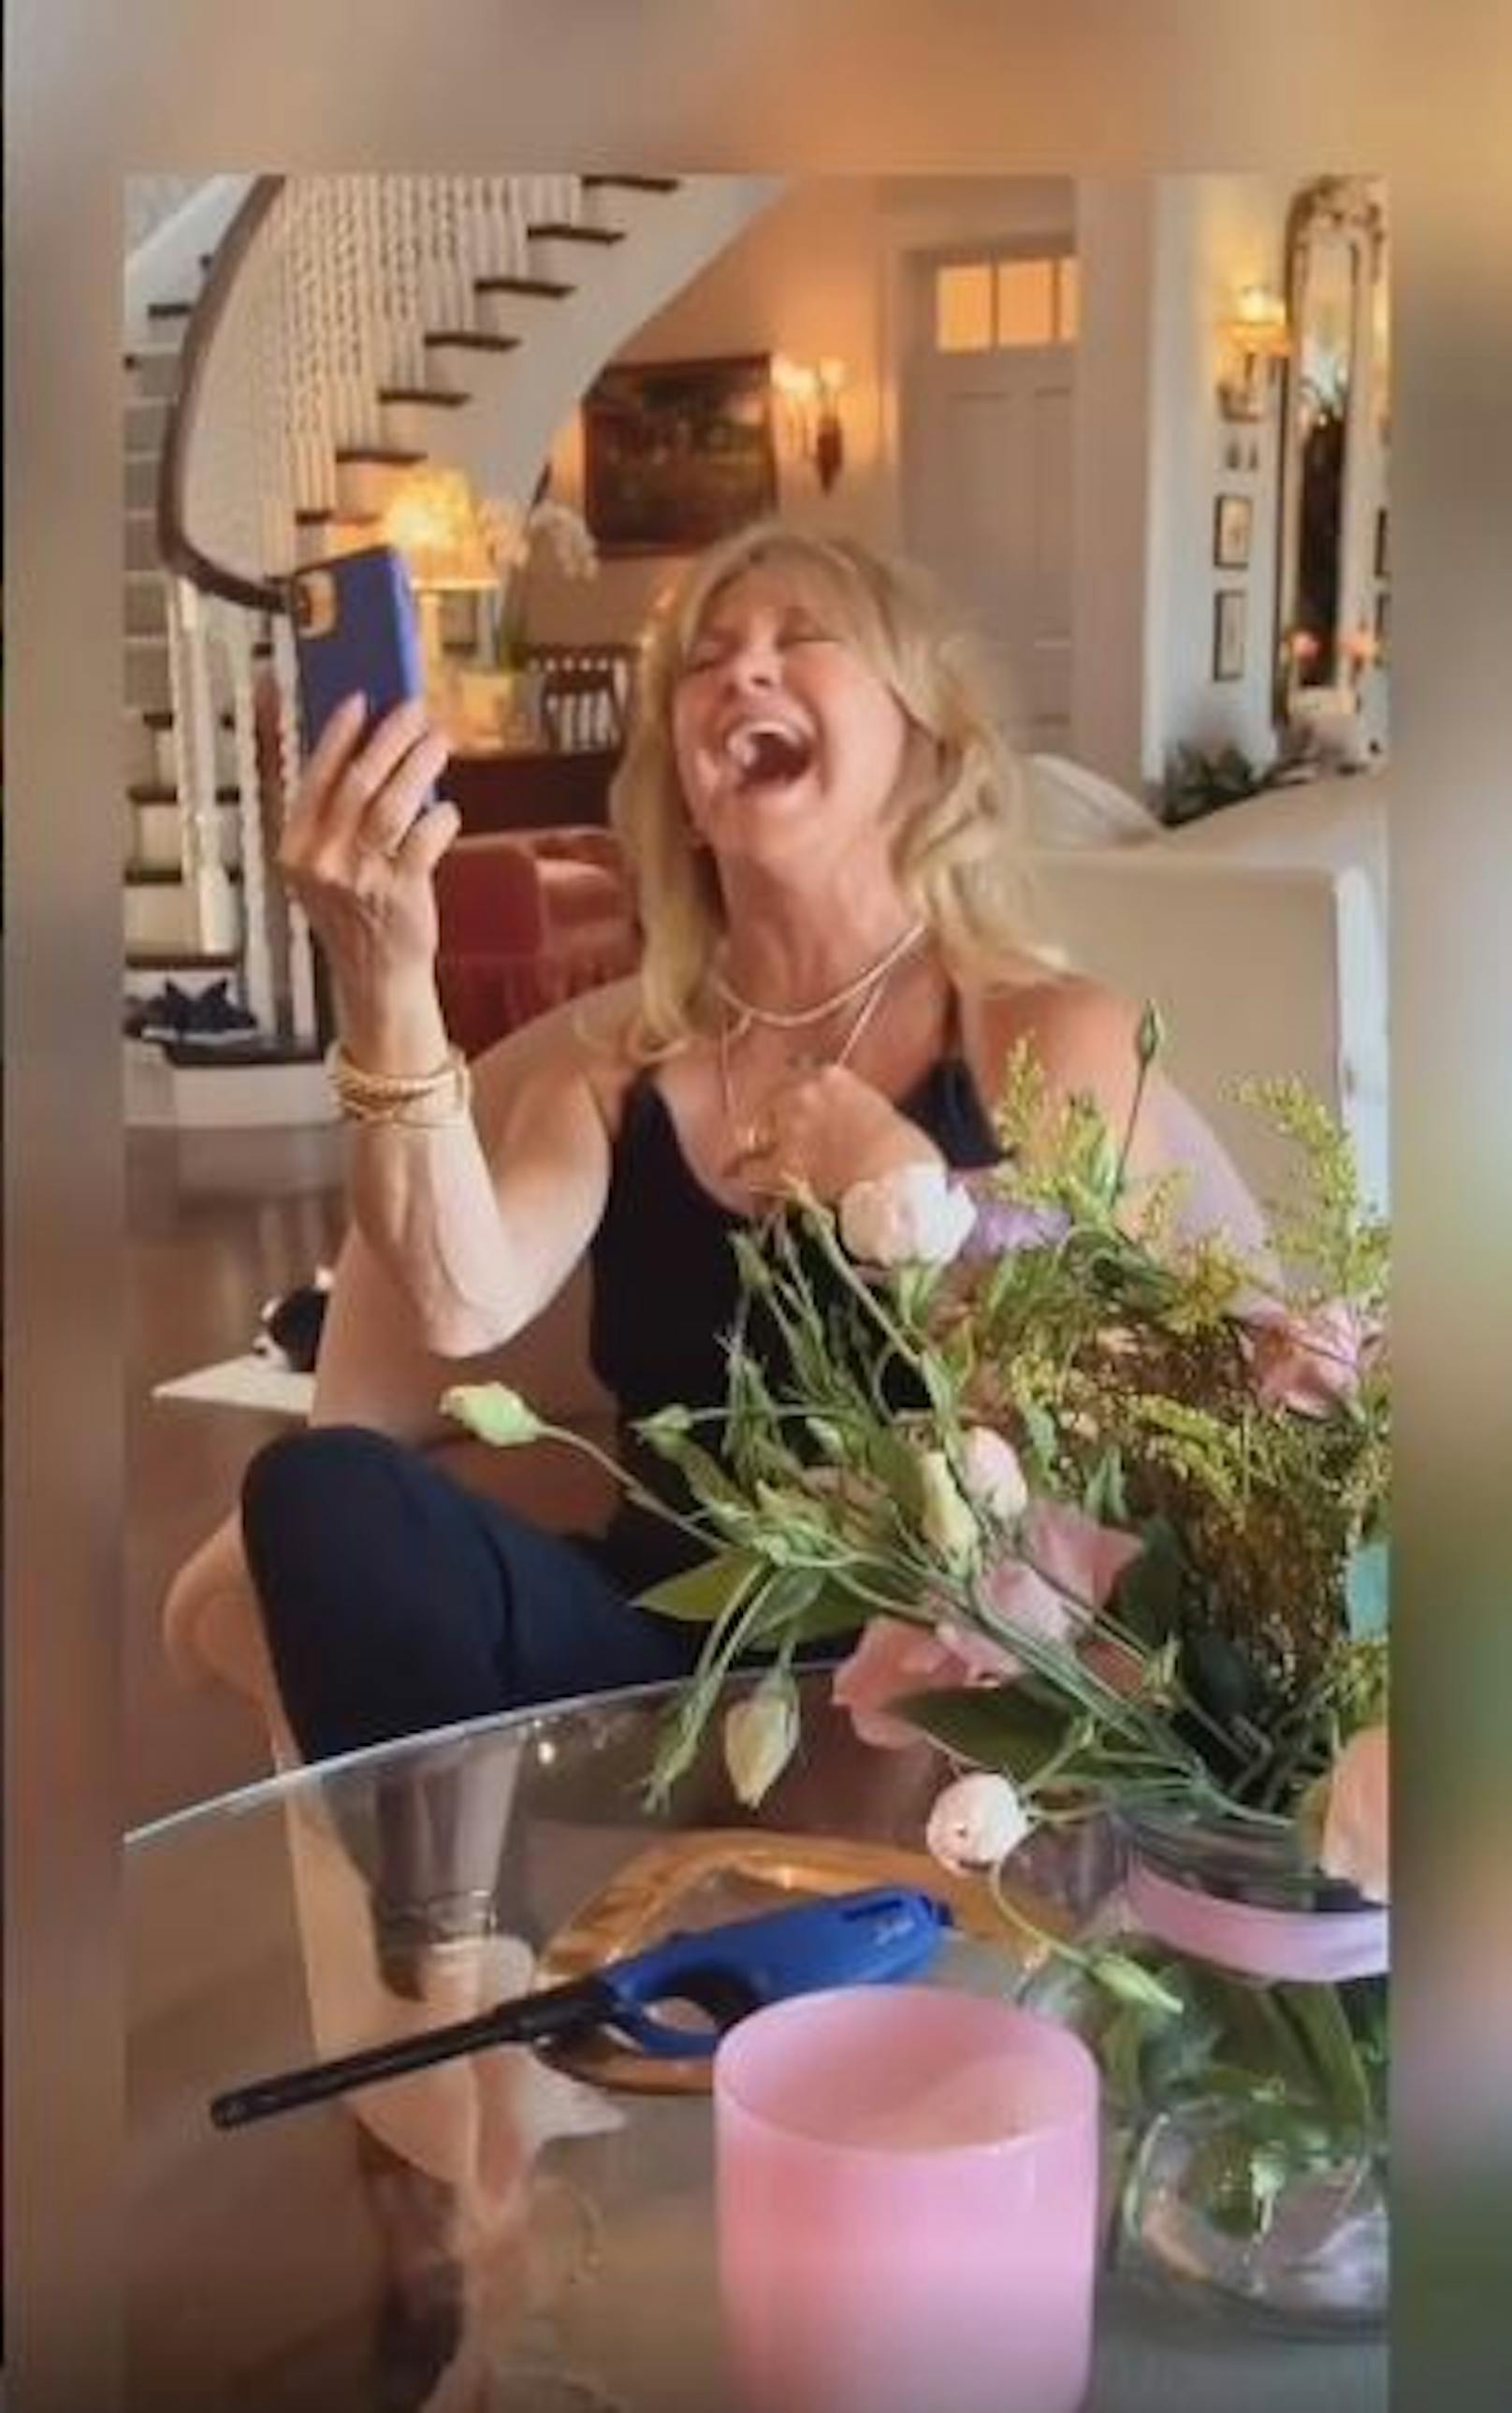 28.5.2020: <strong>Goldie Hawn</strong> hat endlich ihr Strahlen wieder gefunden. Mit der von ihr ausgerufenen "Laughing Challenge" zaubert sie nicht nur ihren Fans, sondern auch sich ein herzhaftes Lachen aufs Gesicht.